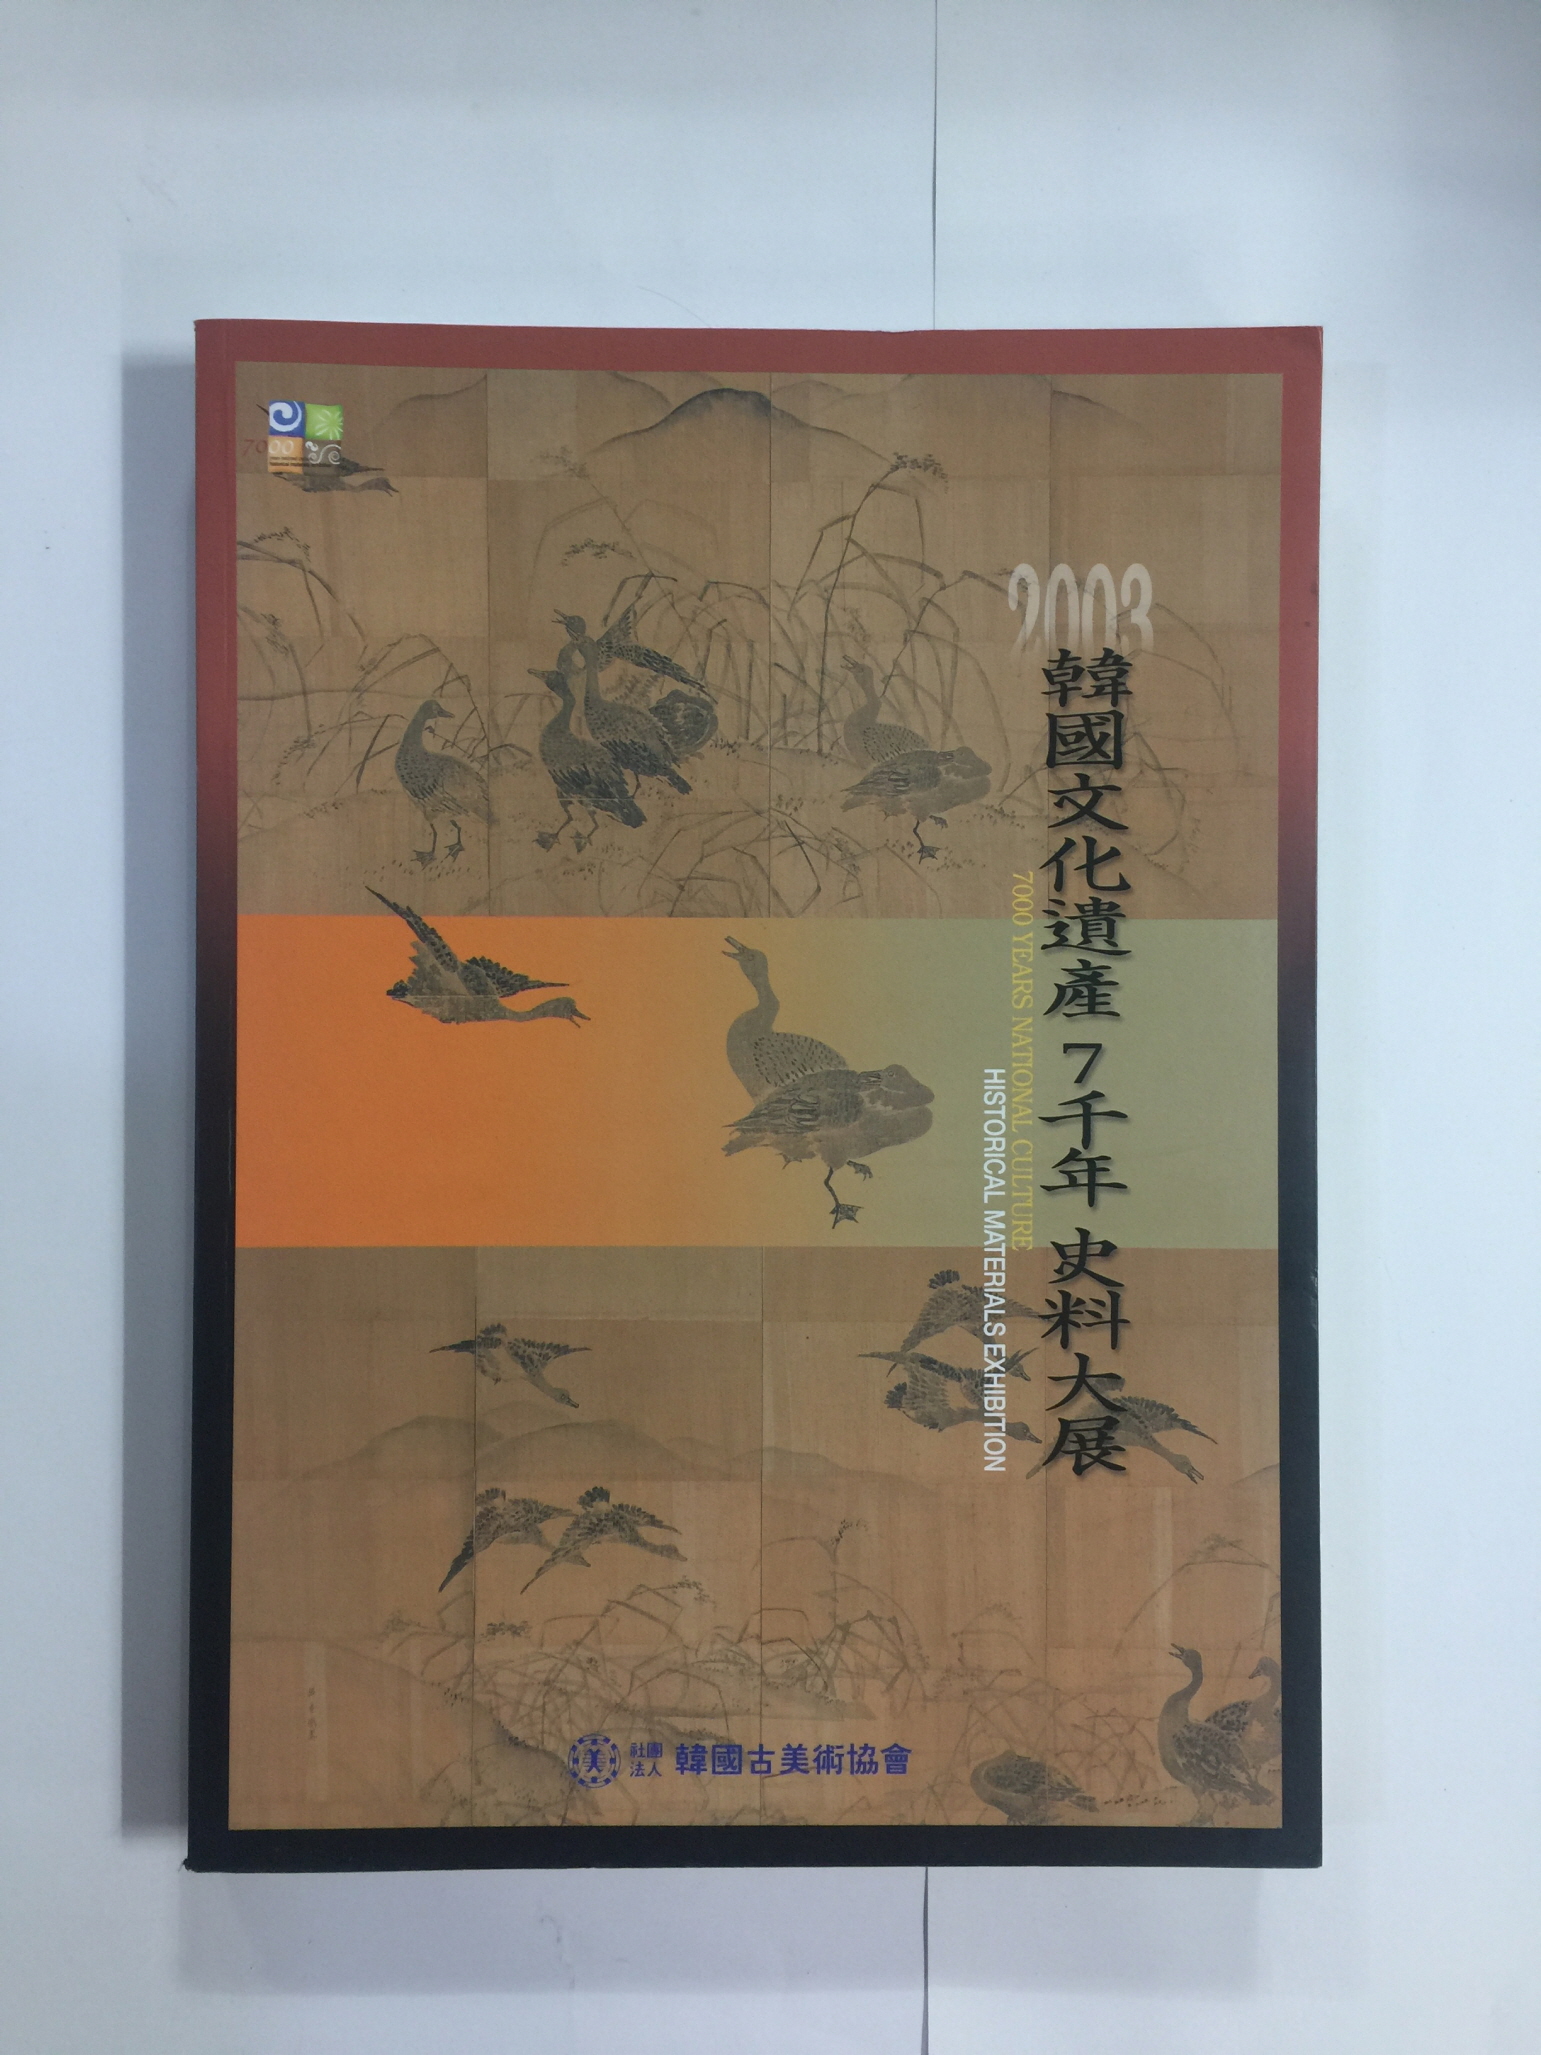 2003 한국문화유산 7천년 사료대전